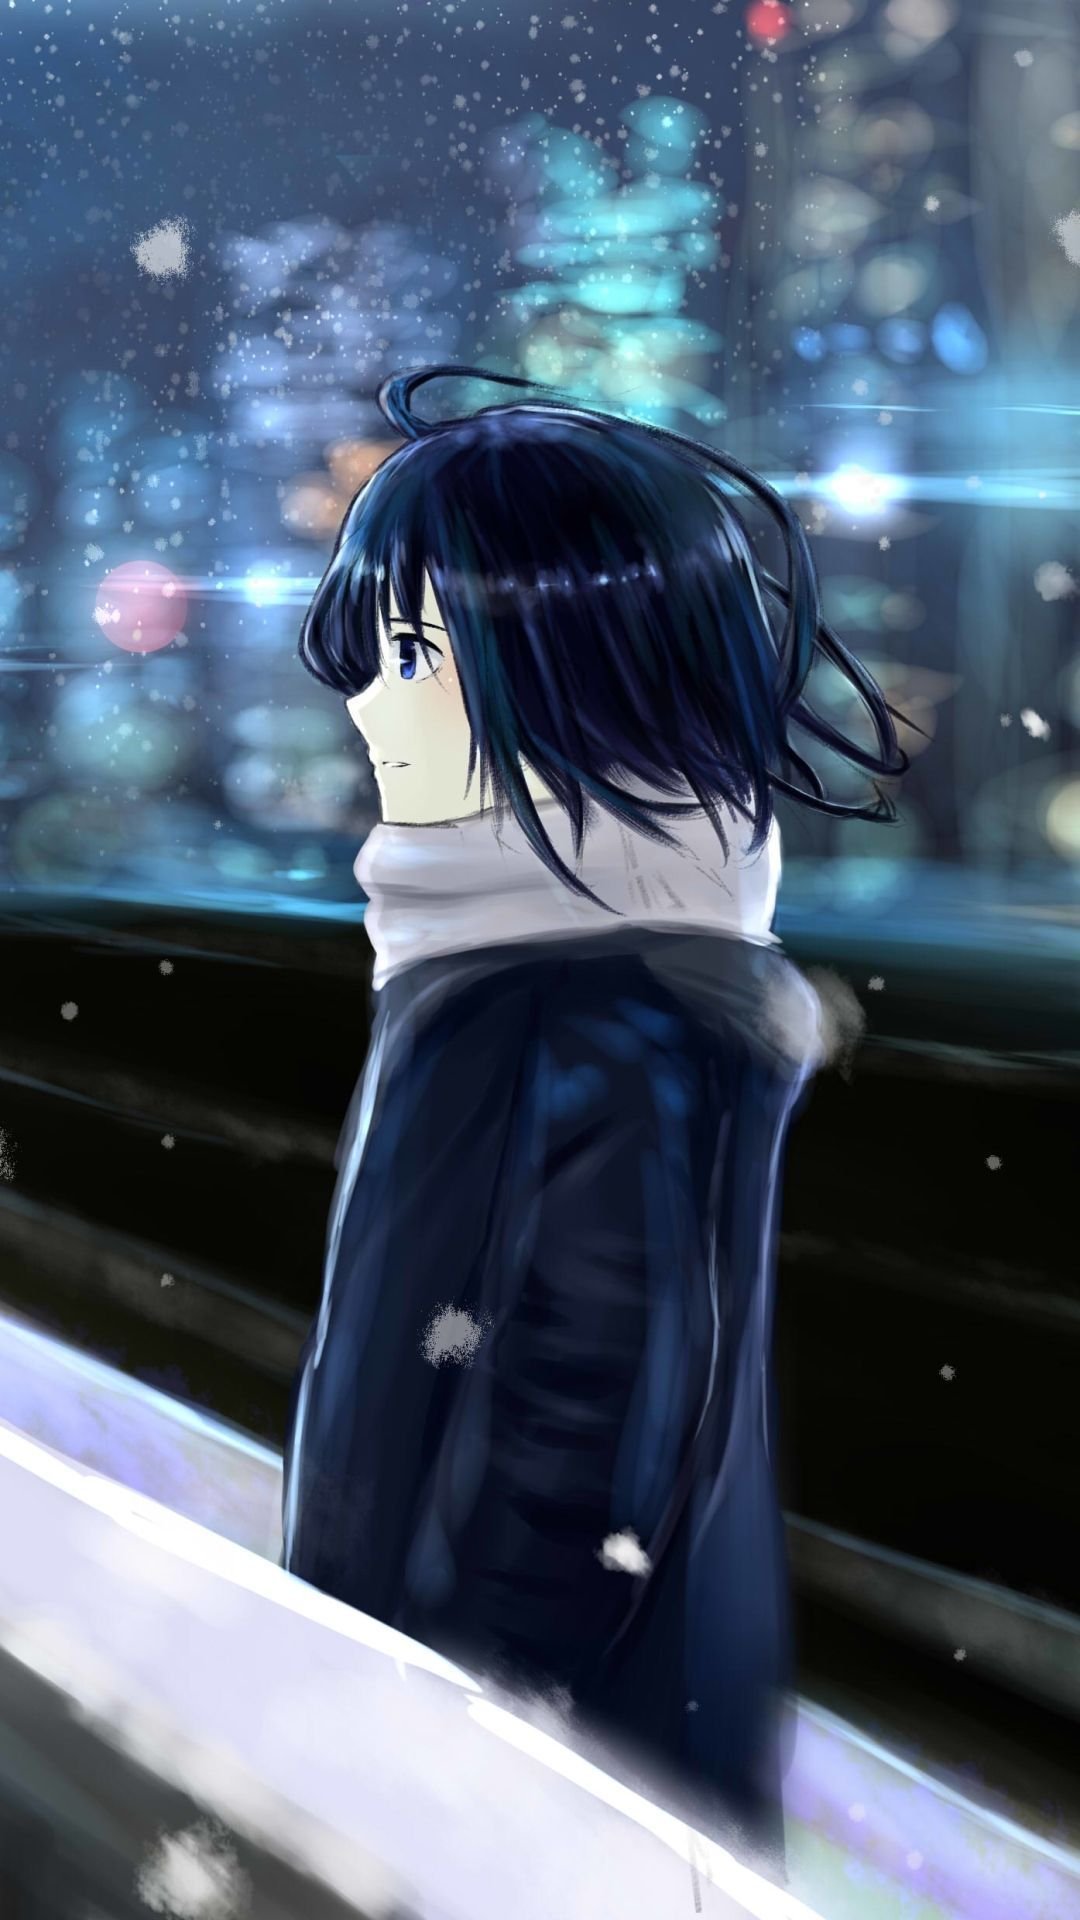 Top 10 Sad Anime Girls With Depressed Personalities - Animevania